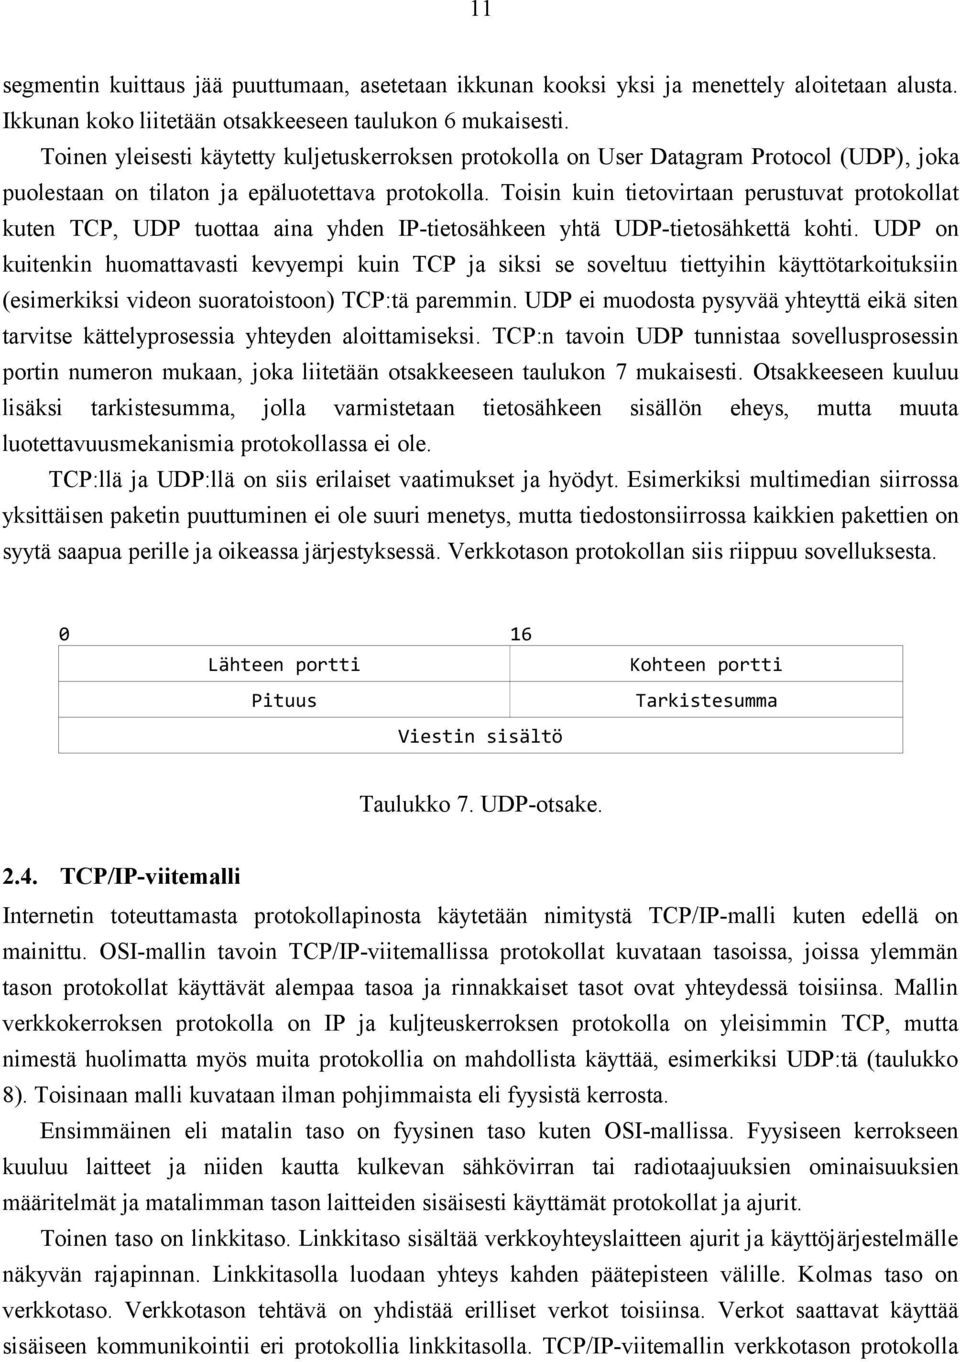 Toisin kuin tietovirtaan perustuvat protokollat kuten TCP, UDP tuottaa aina yhden IP-tietosähkeen yhtä UDP-tietosähkettä kohti.